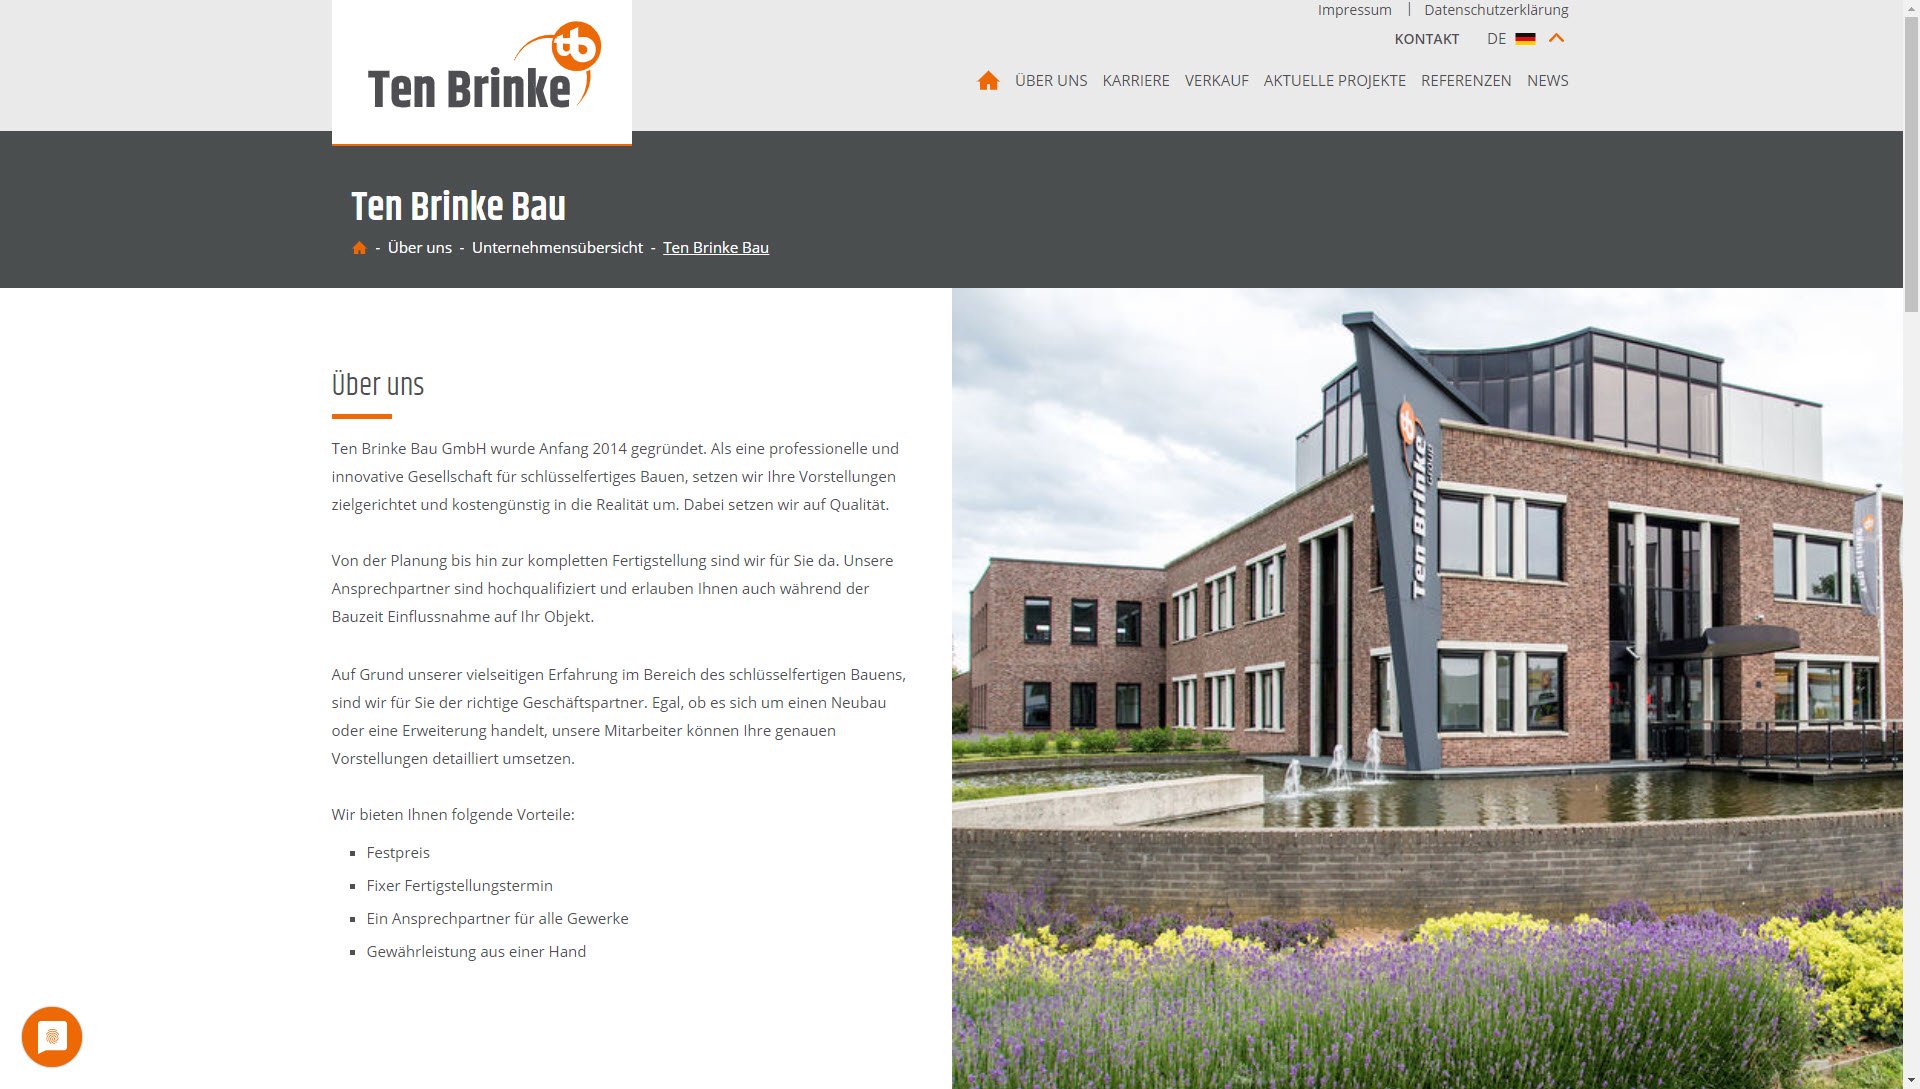 Ten Brinke Bau GmbH & Co. KG